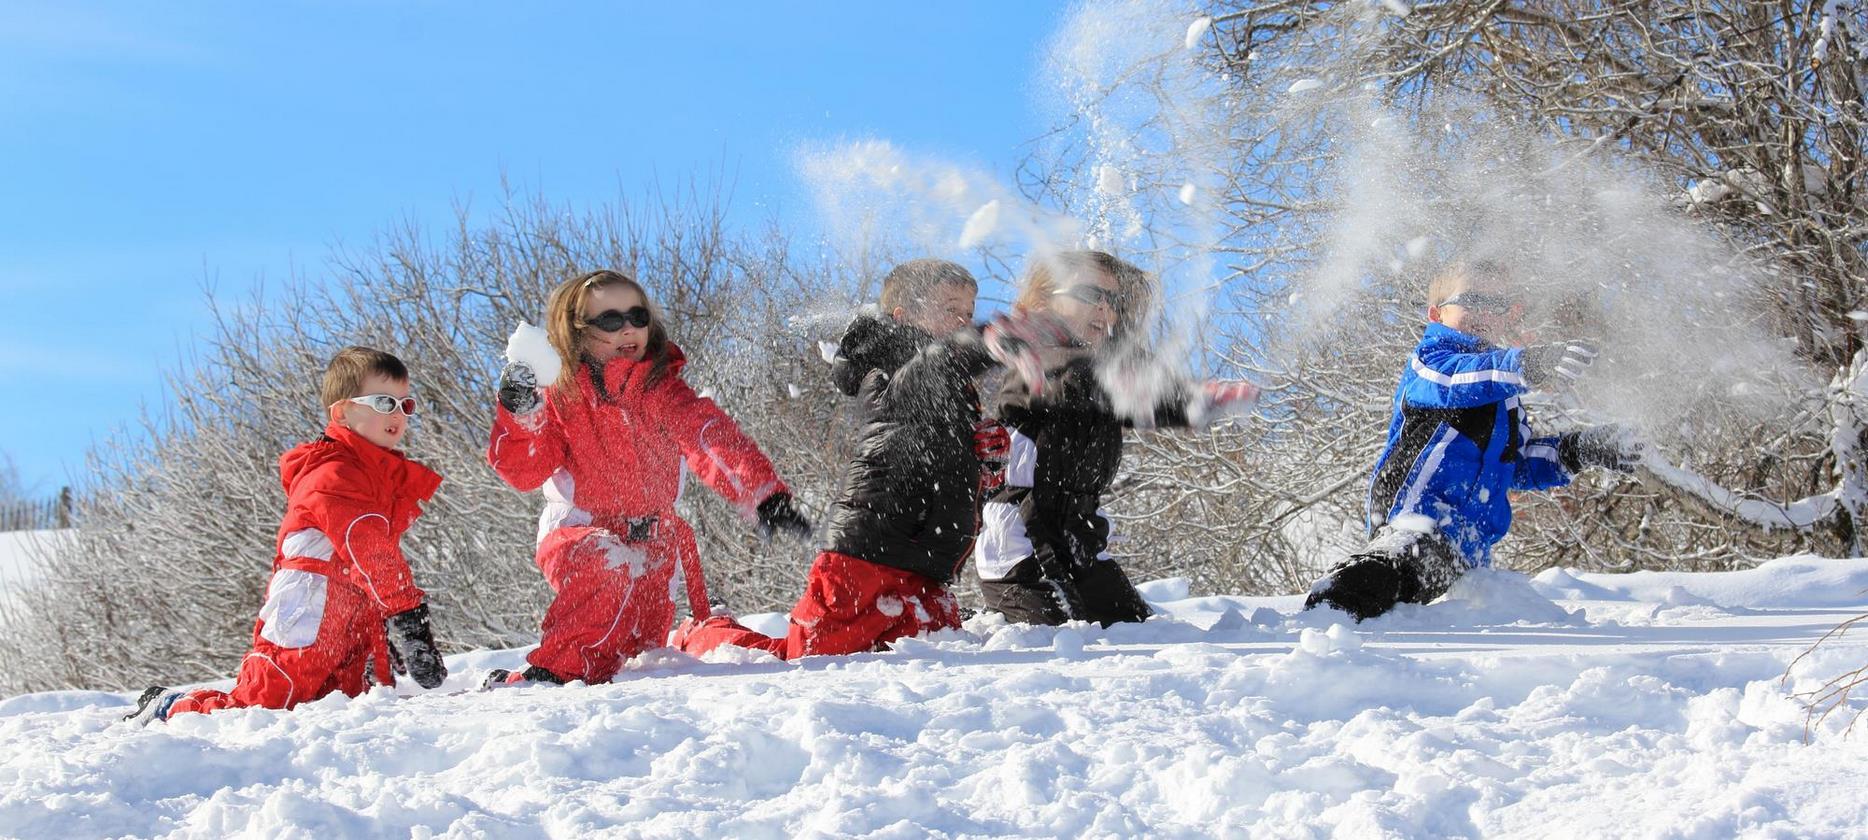 Super Besse - Snow fight between children at Mont Dore